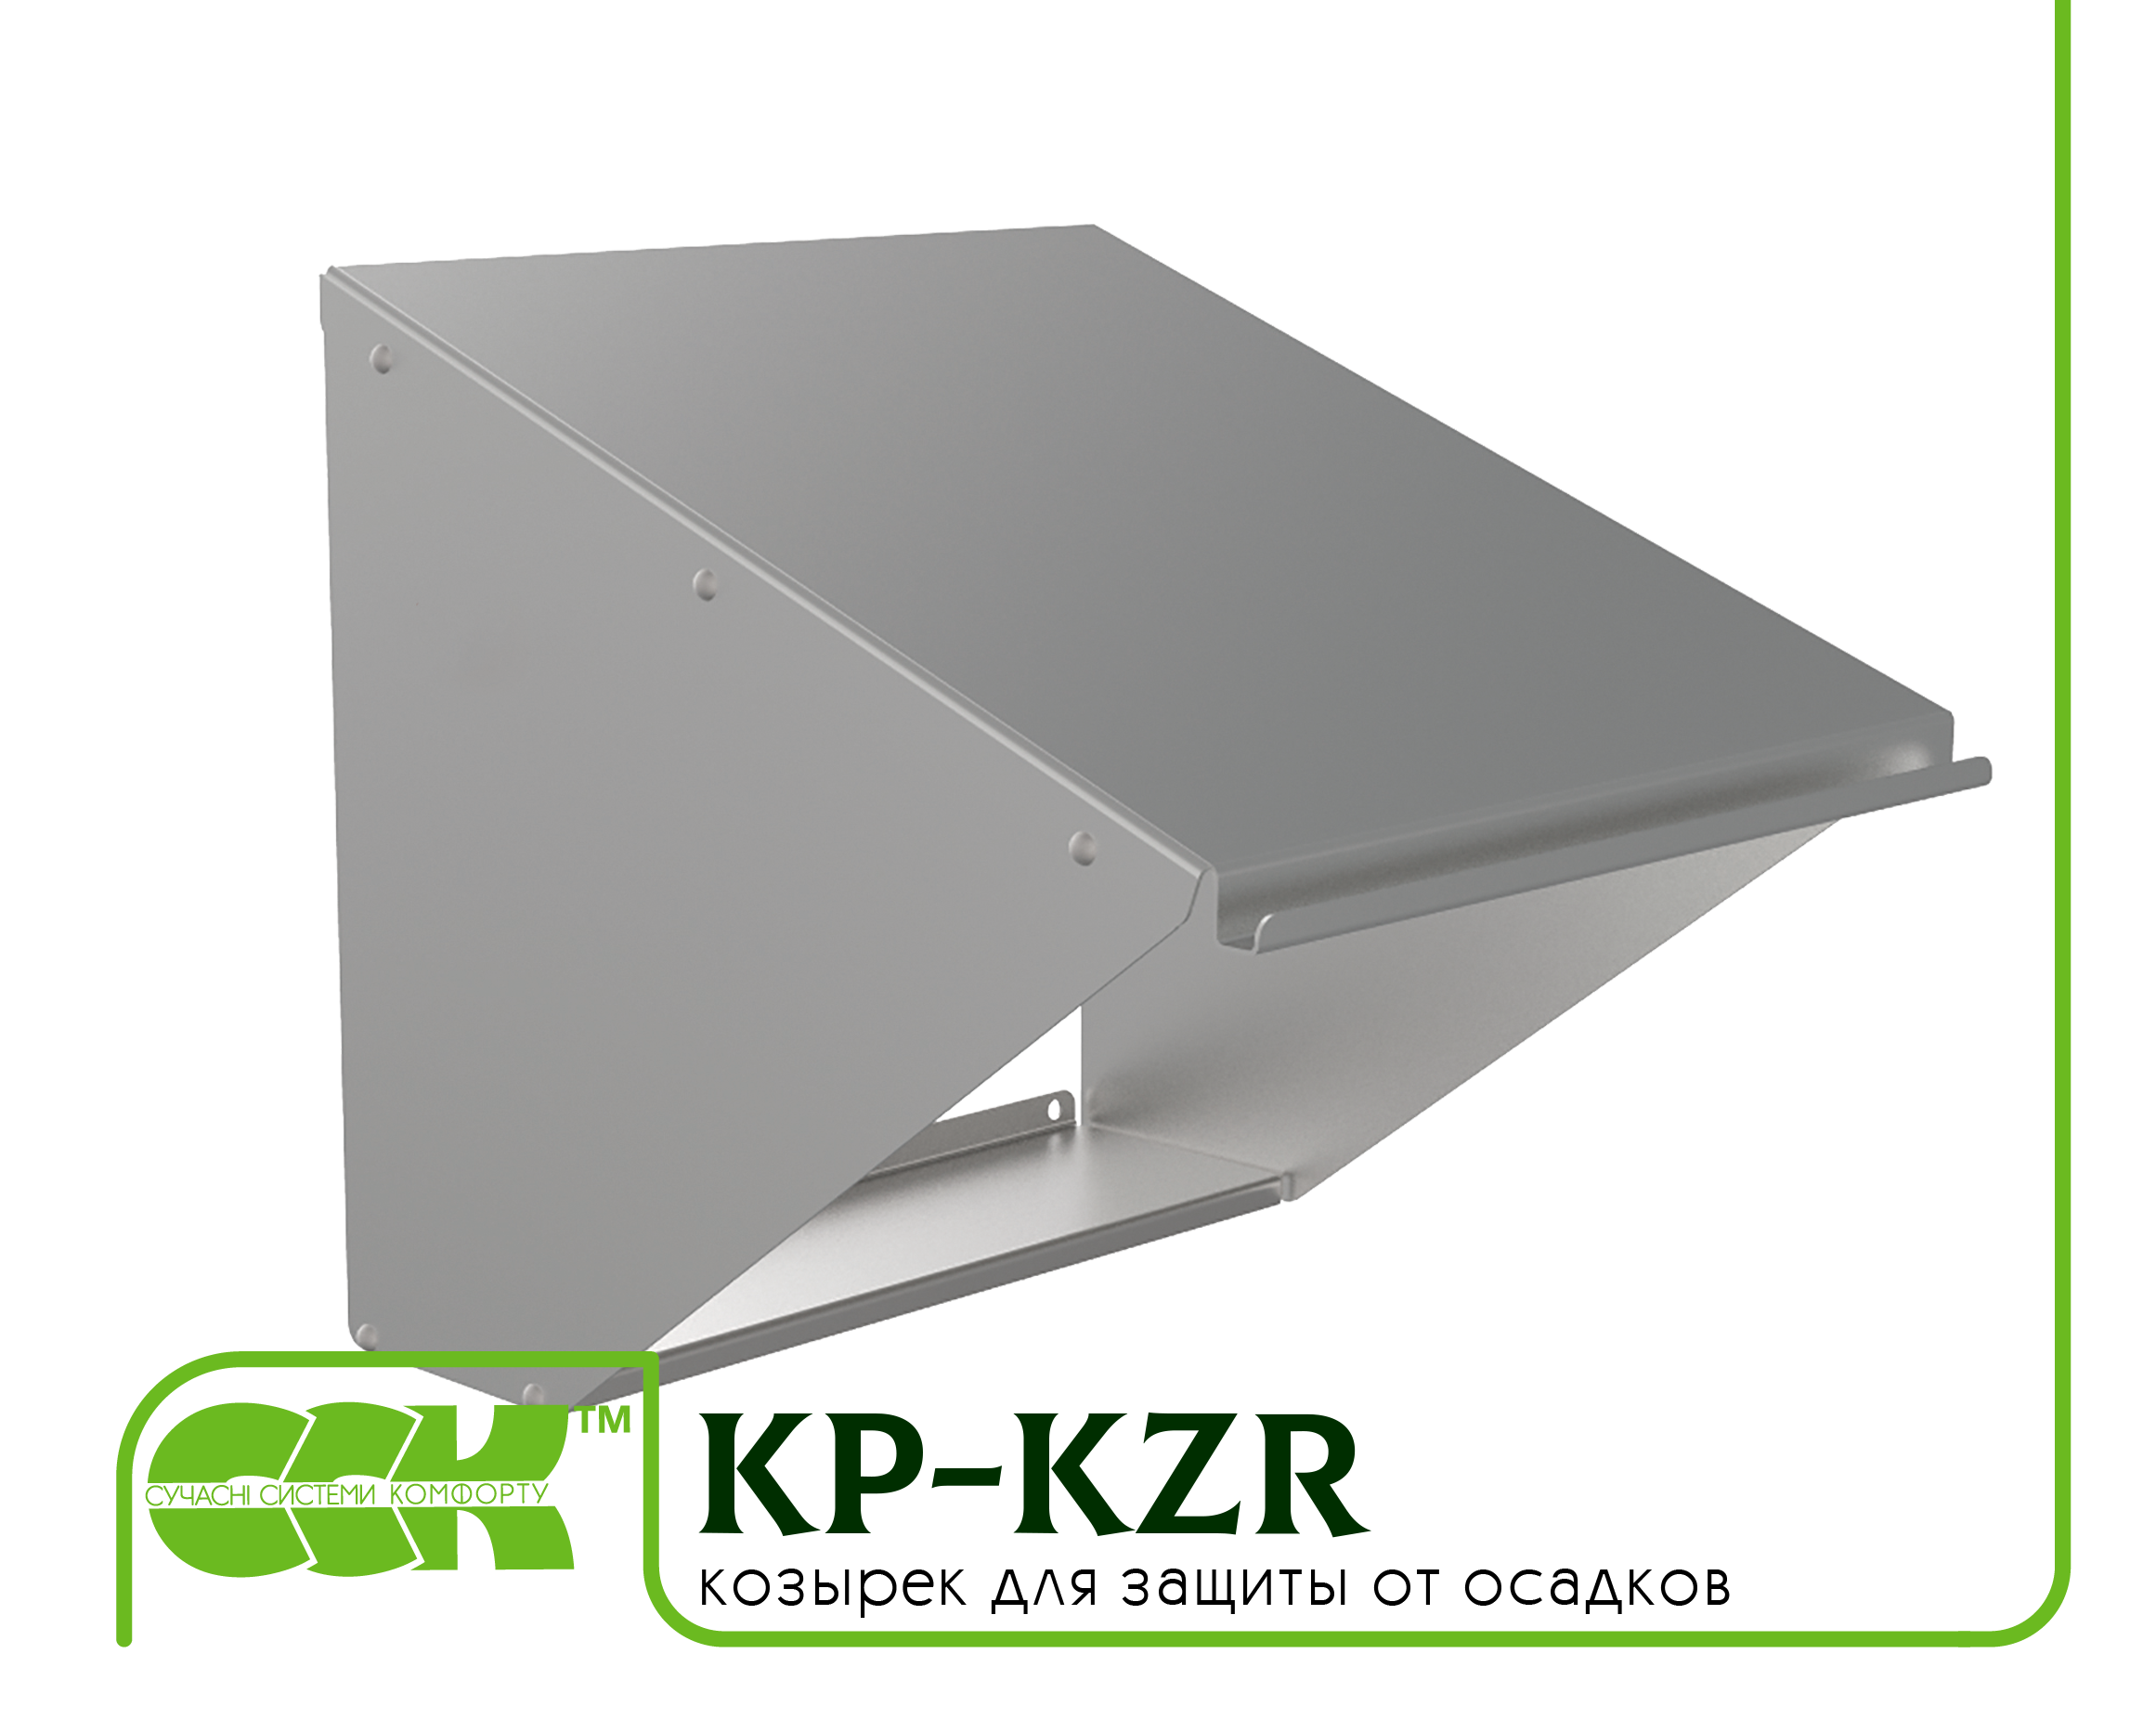 Козырек для защиты вентилятора KP-KZR-42-42